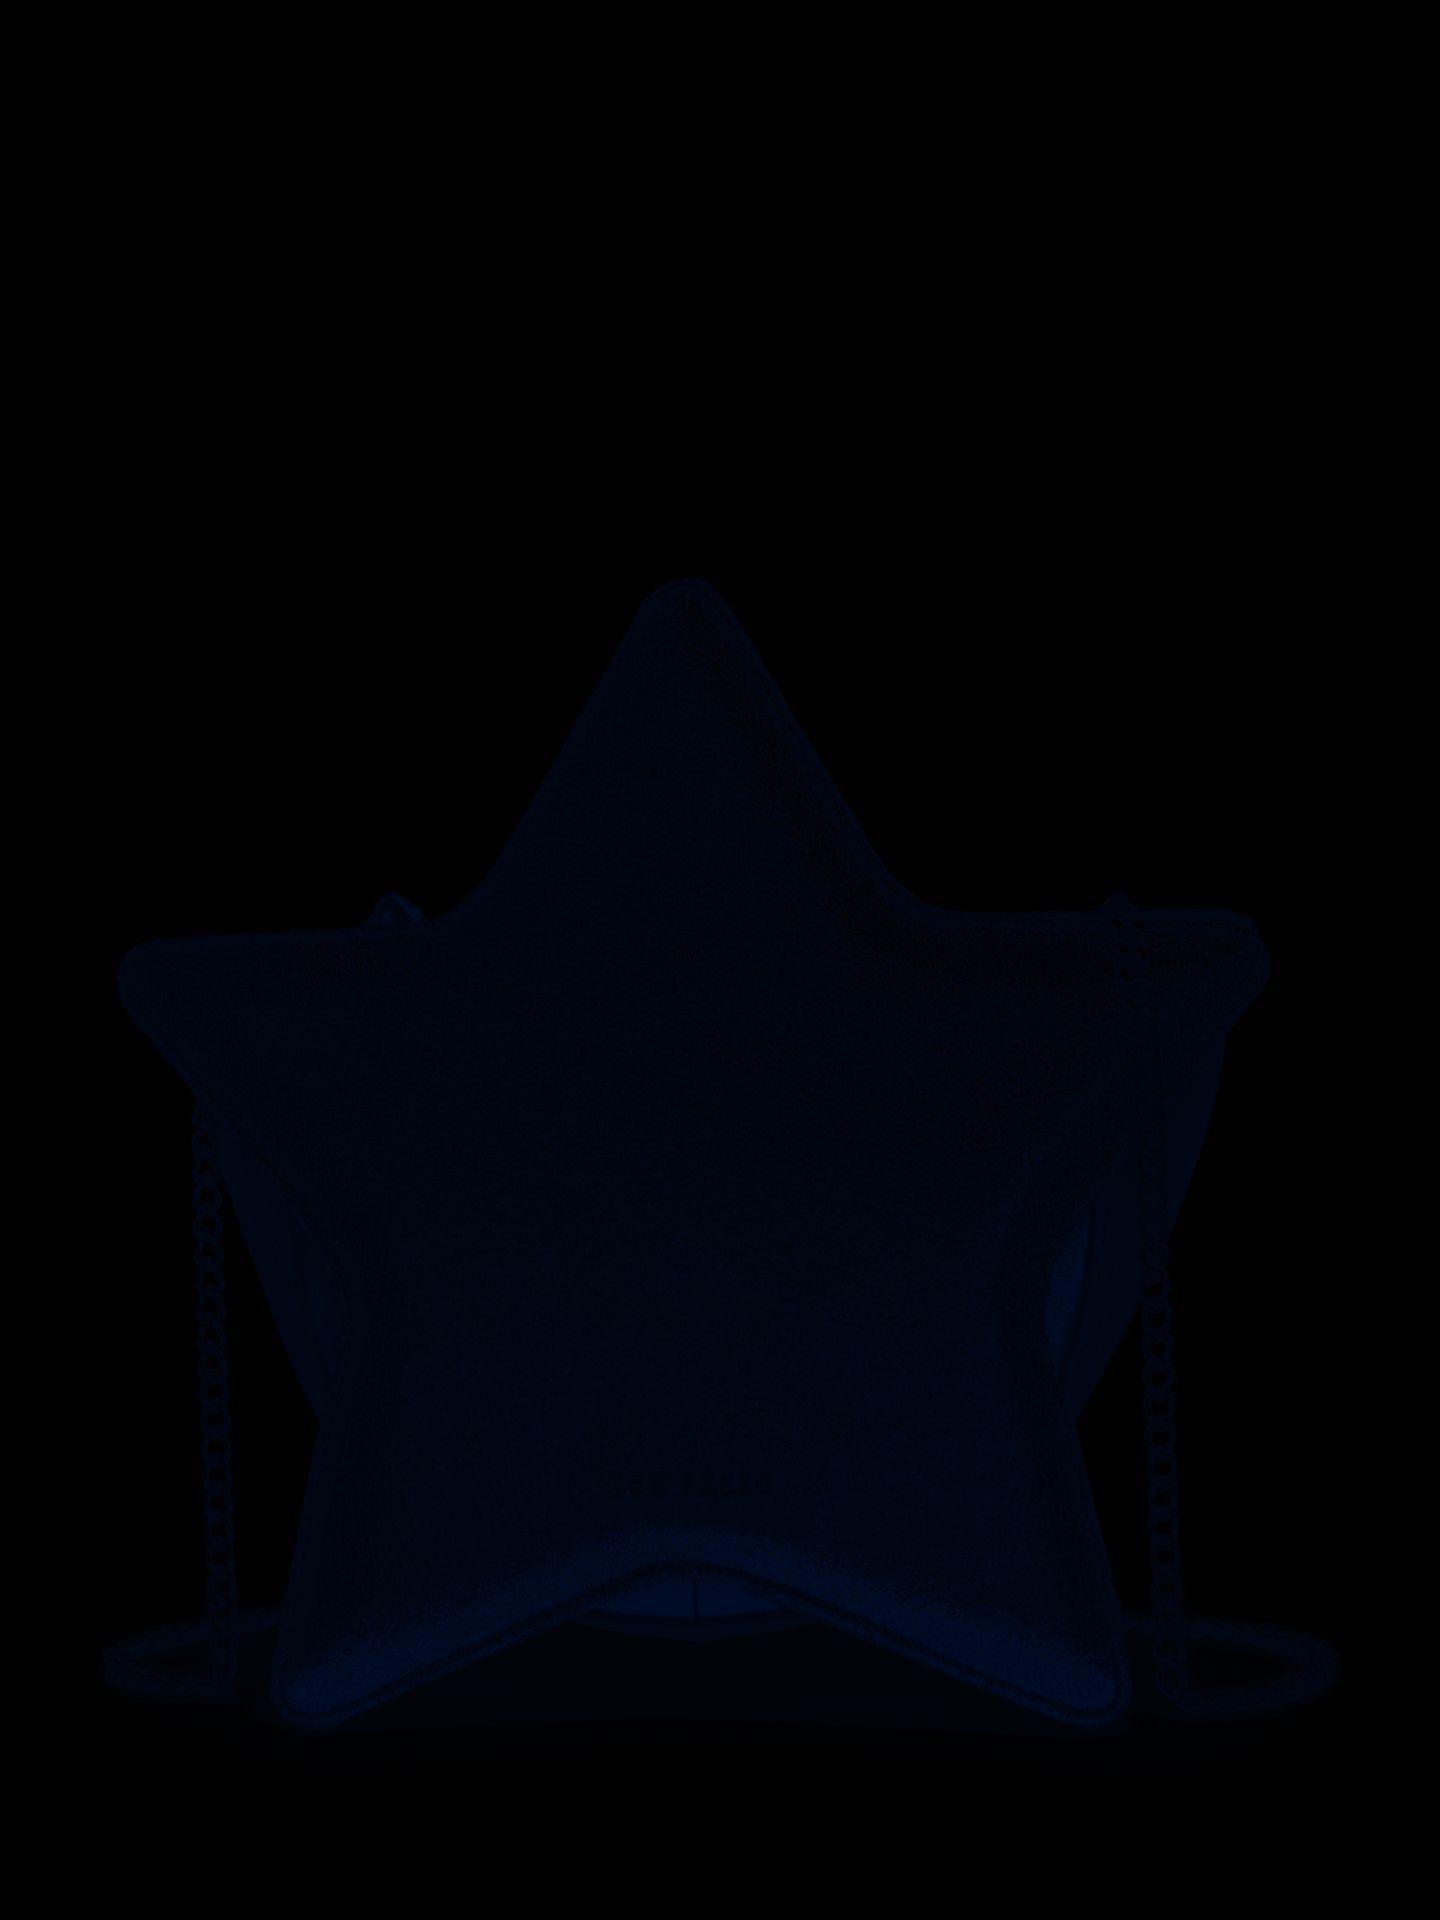 + VAT Brand New Ladies Dark Blue Leather Starry Star Shaped Cross Body Bag (ISP £129 Ted Baker)